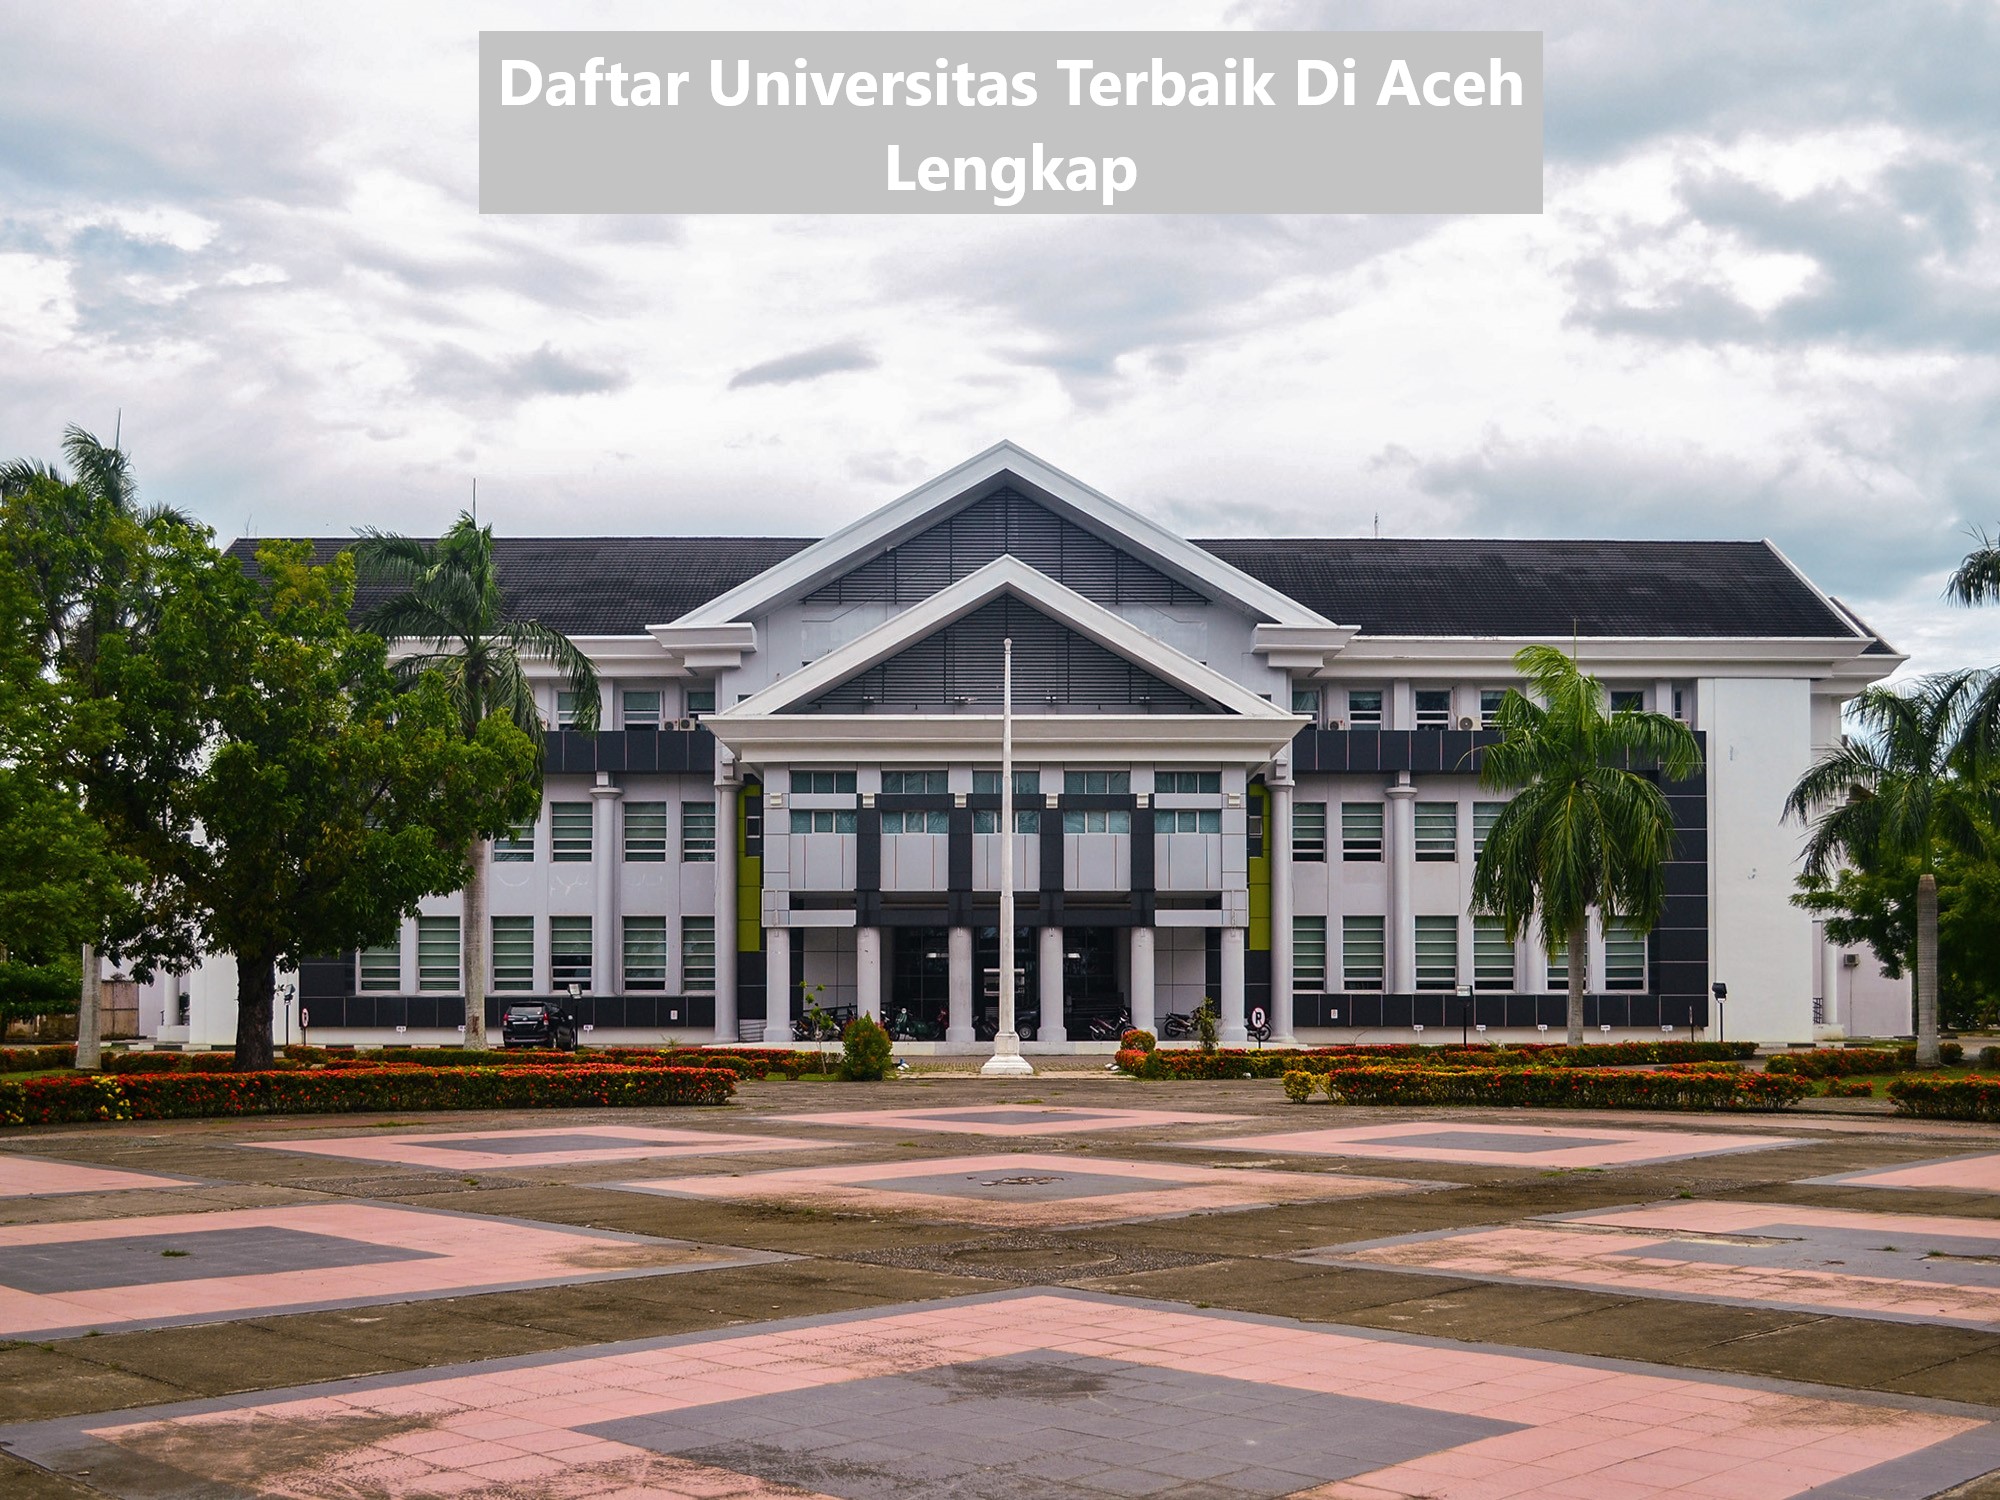 Daftar Universitas Terbaik Di Aceh Lengkap